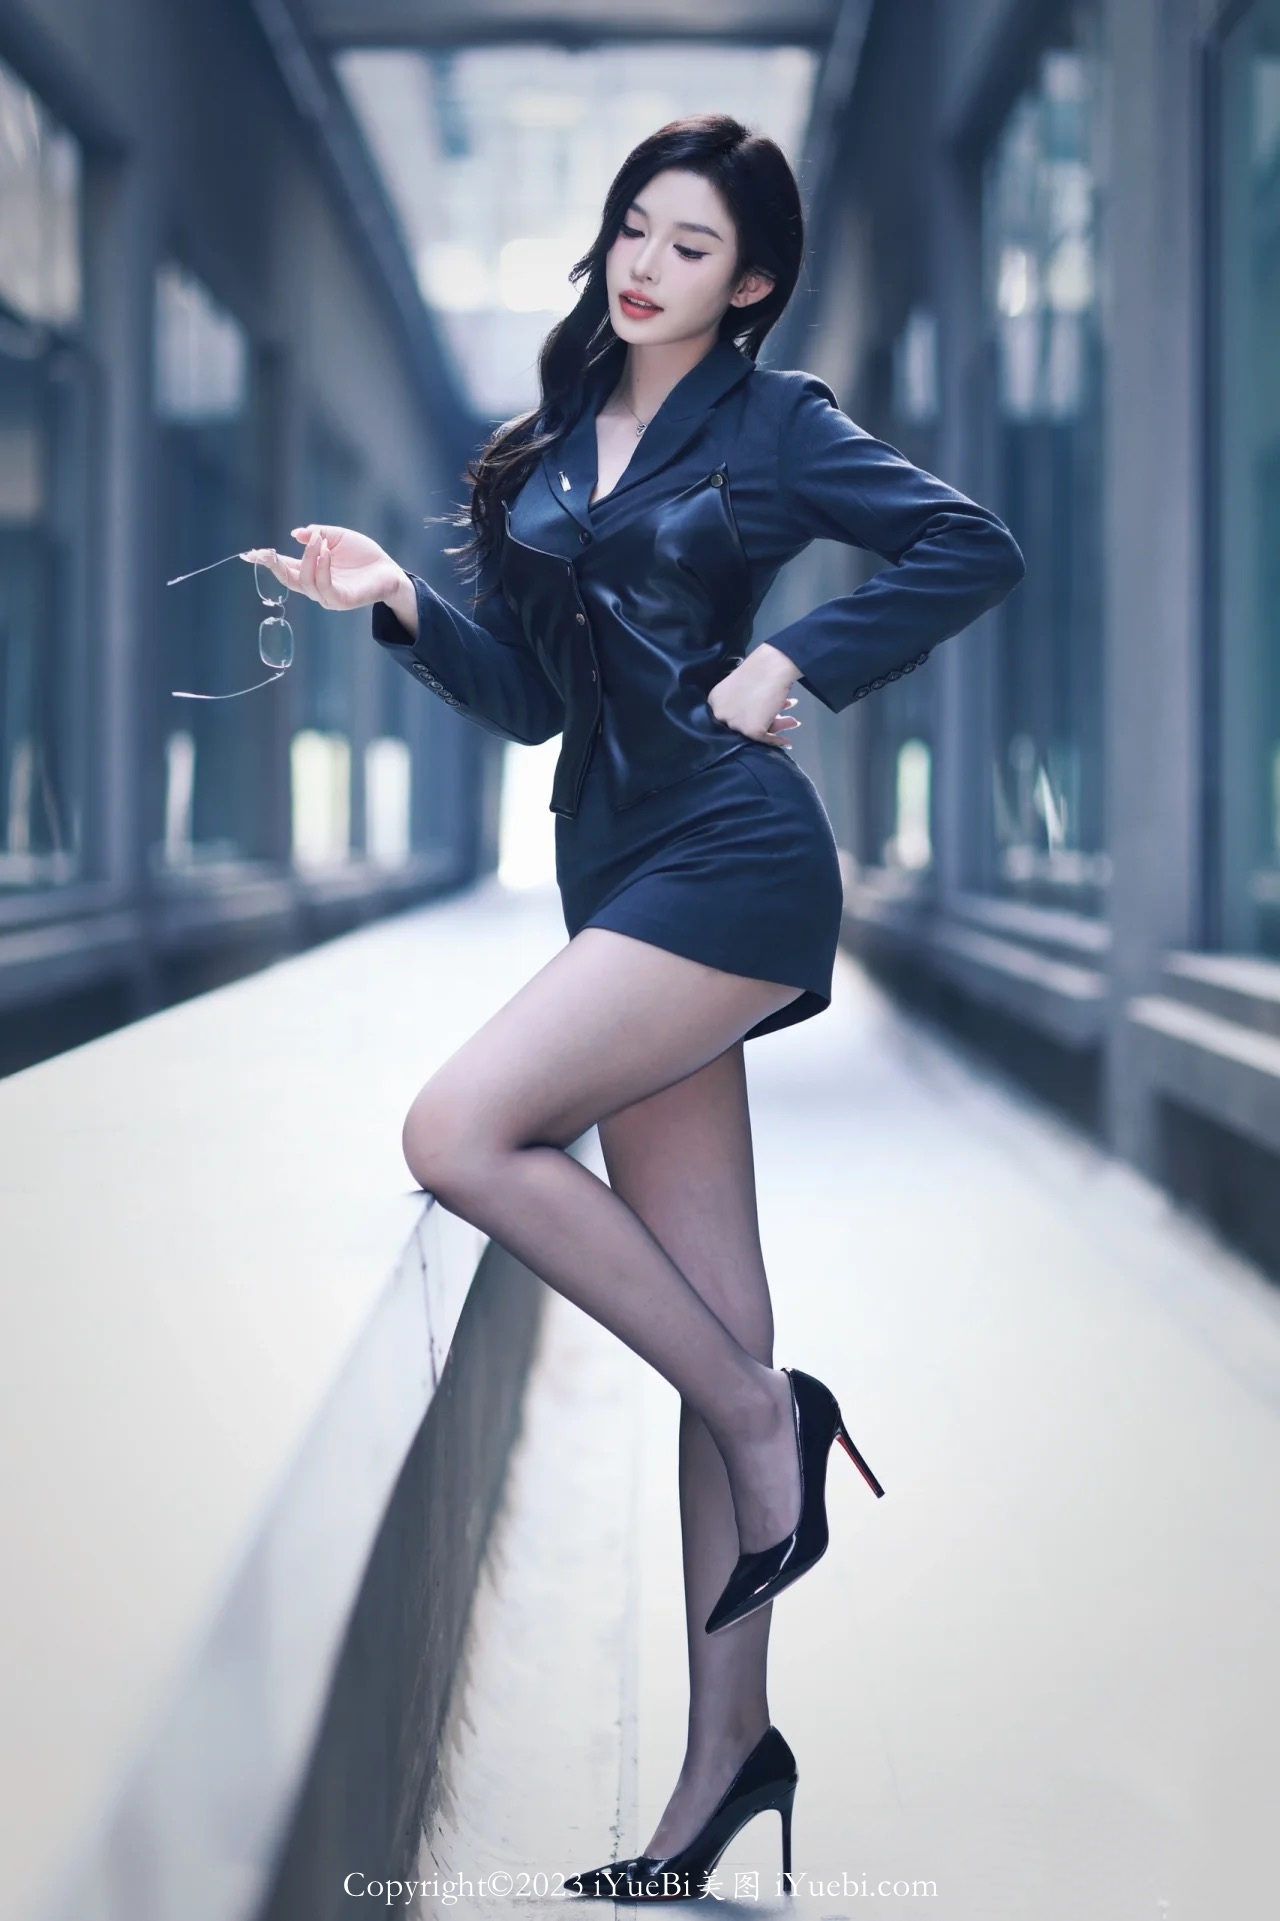 黑丝长腿模特穿着西服短裙在商务大厦背景下拍写真